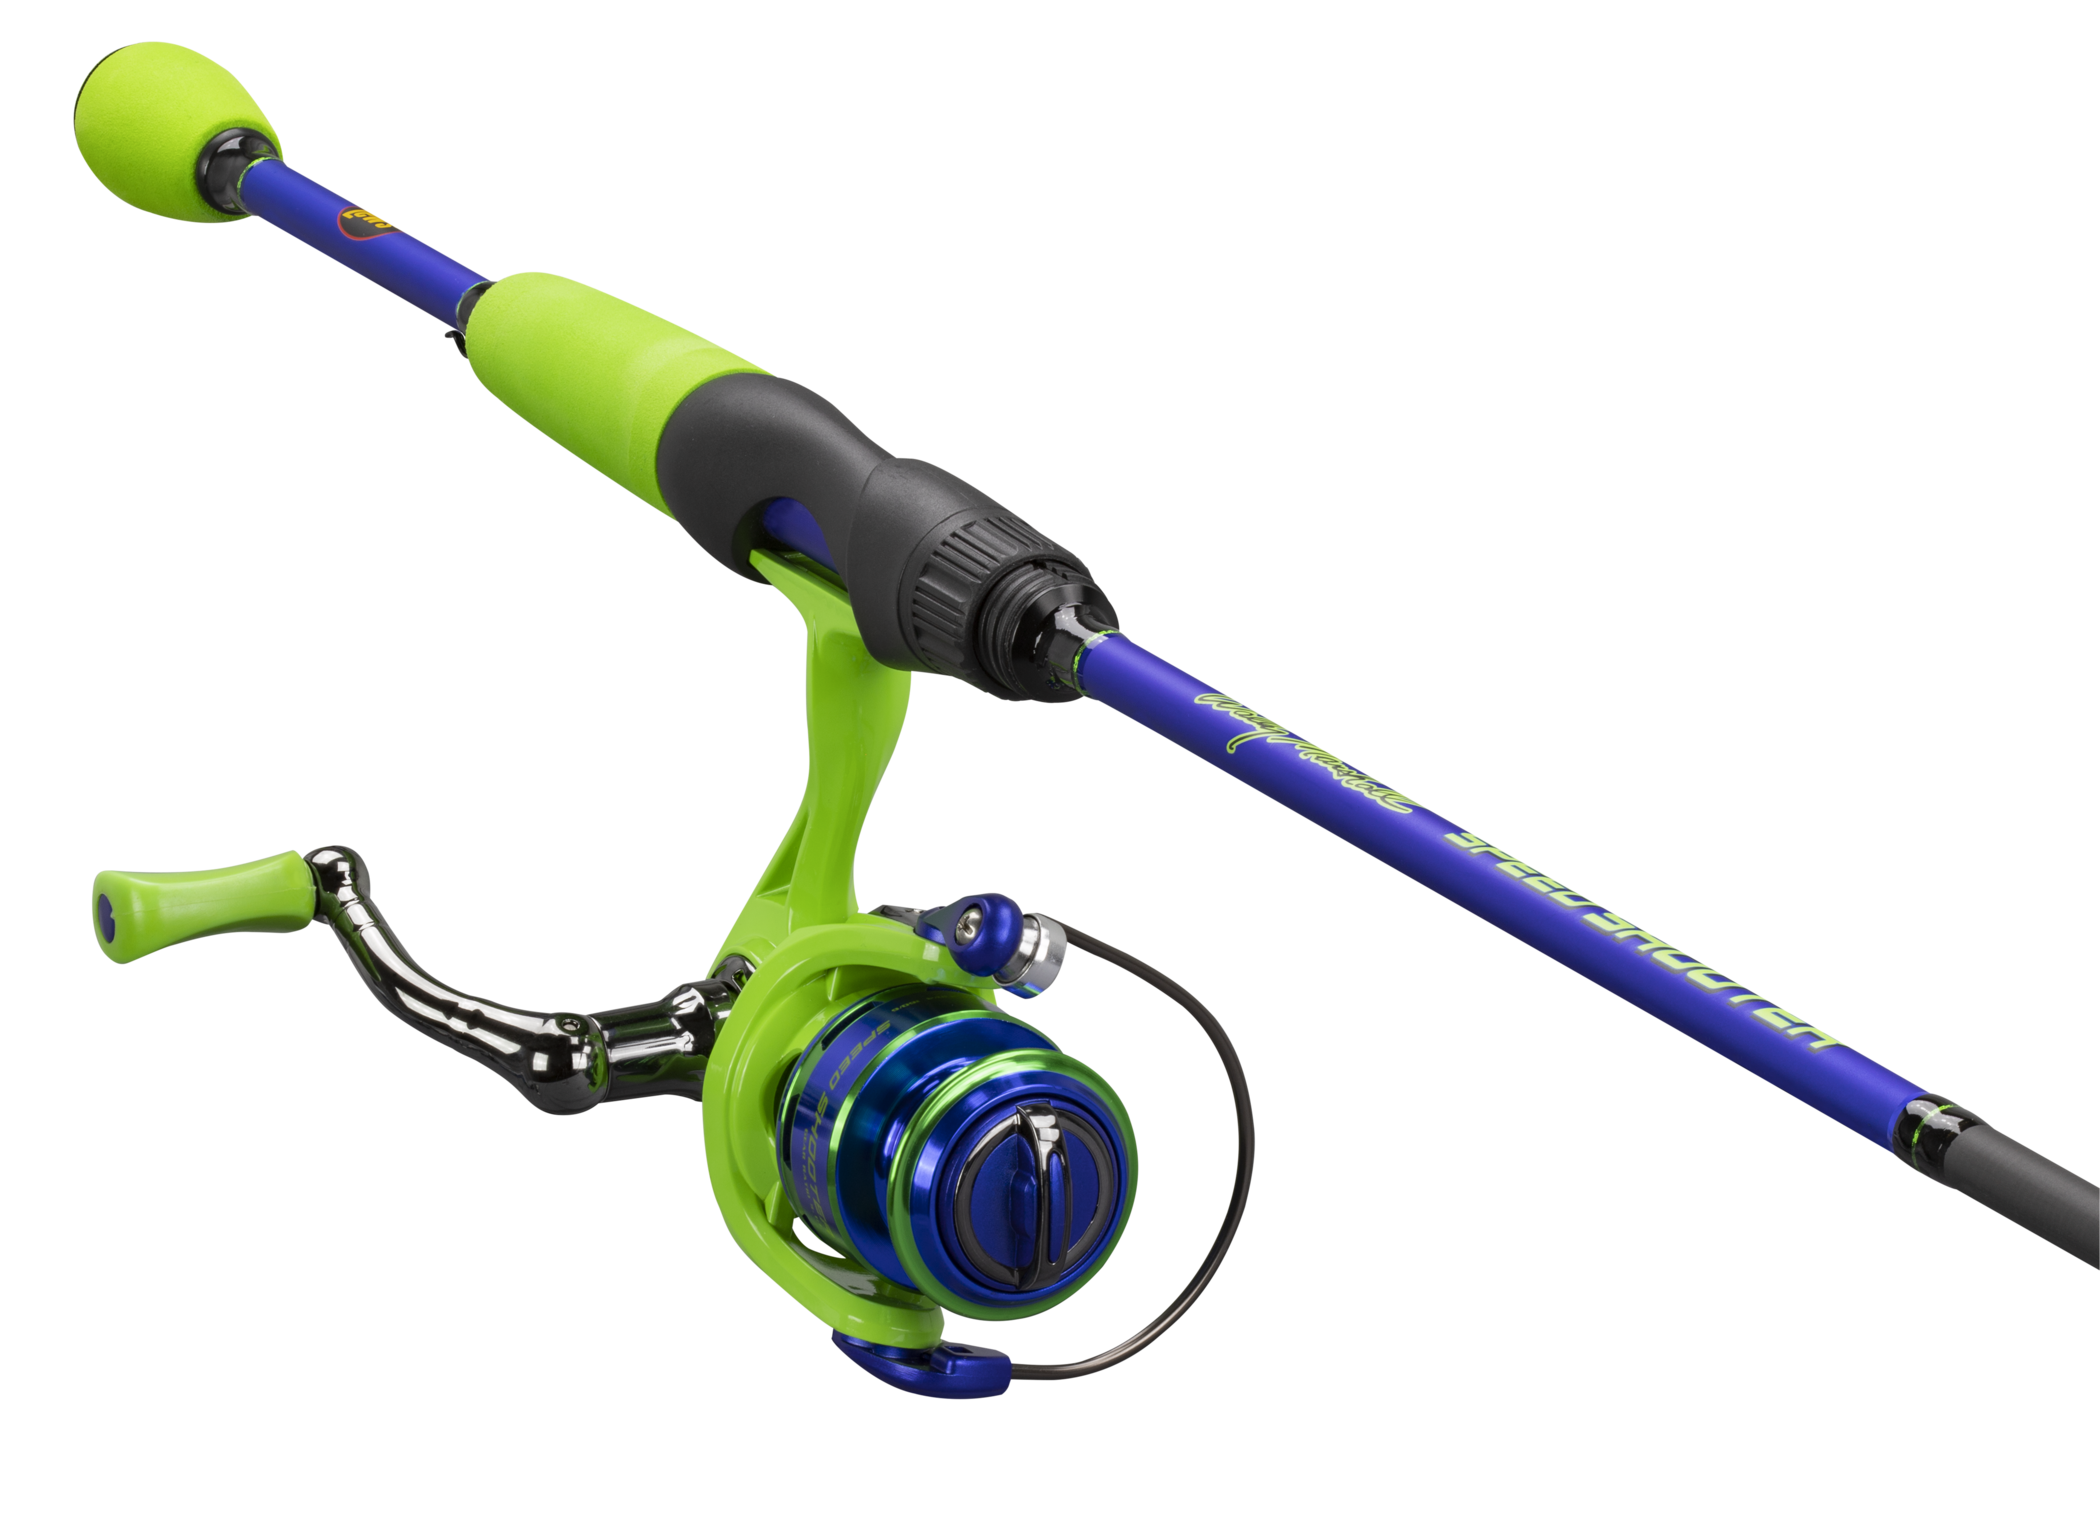 Buy Max Drag Fishing Rod online